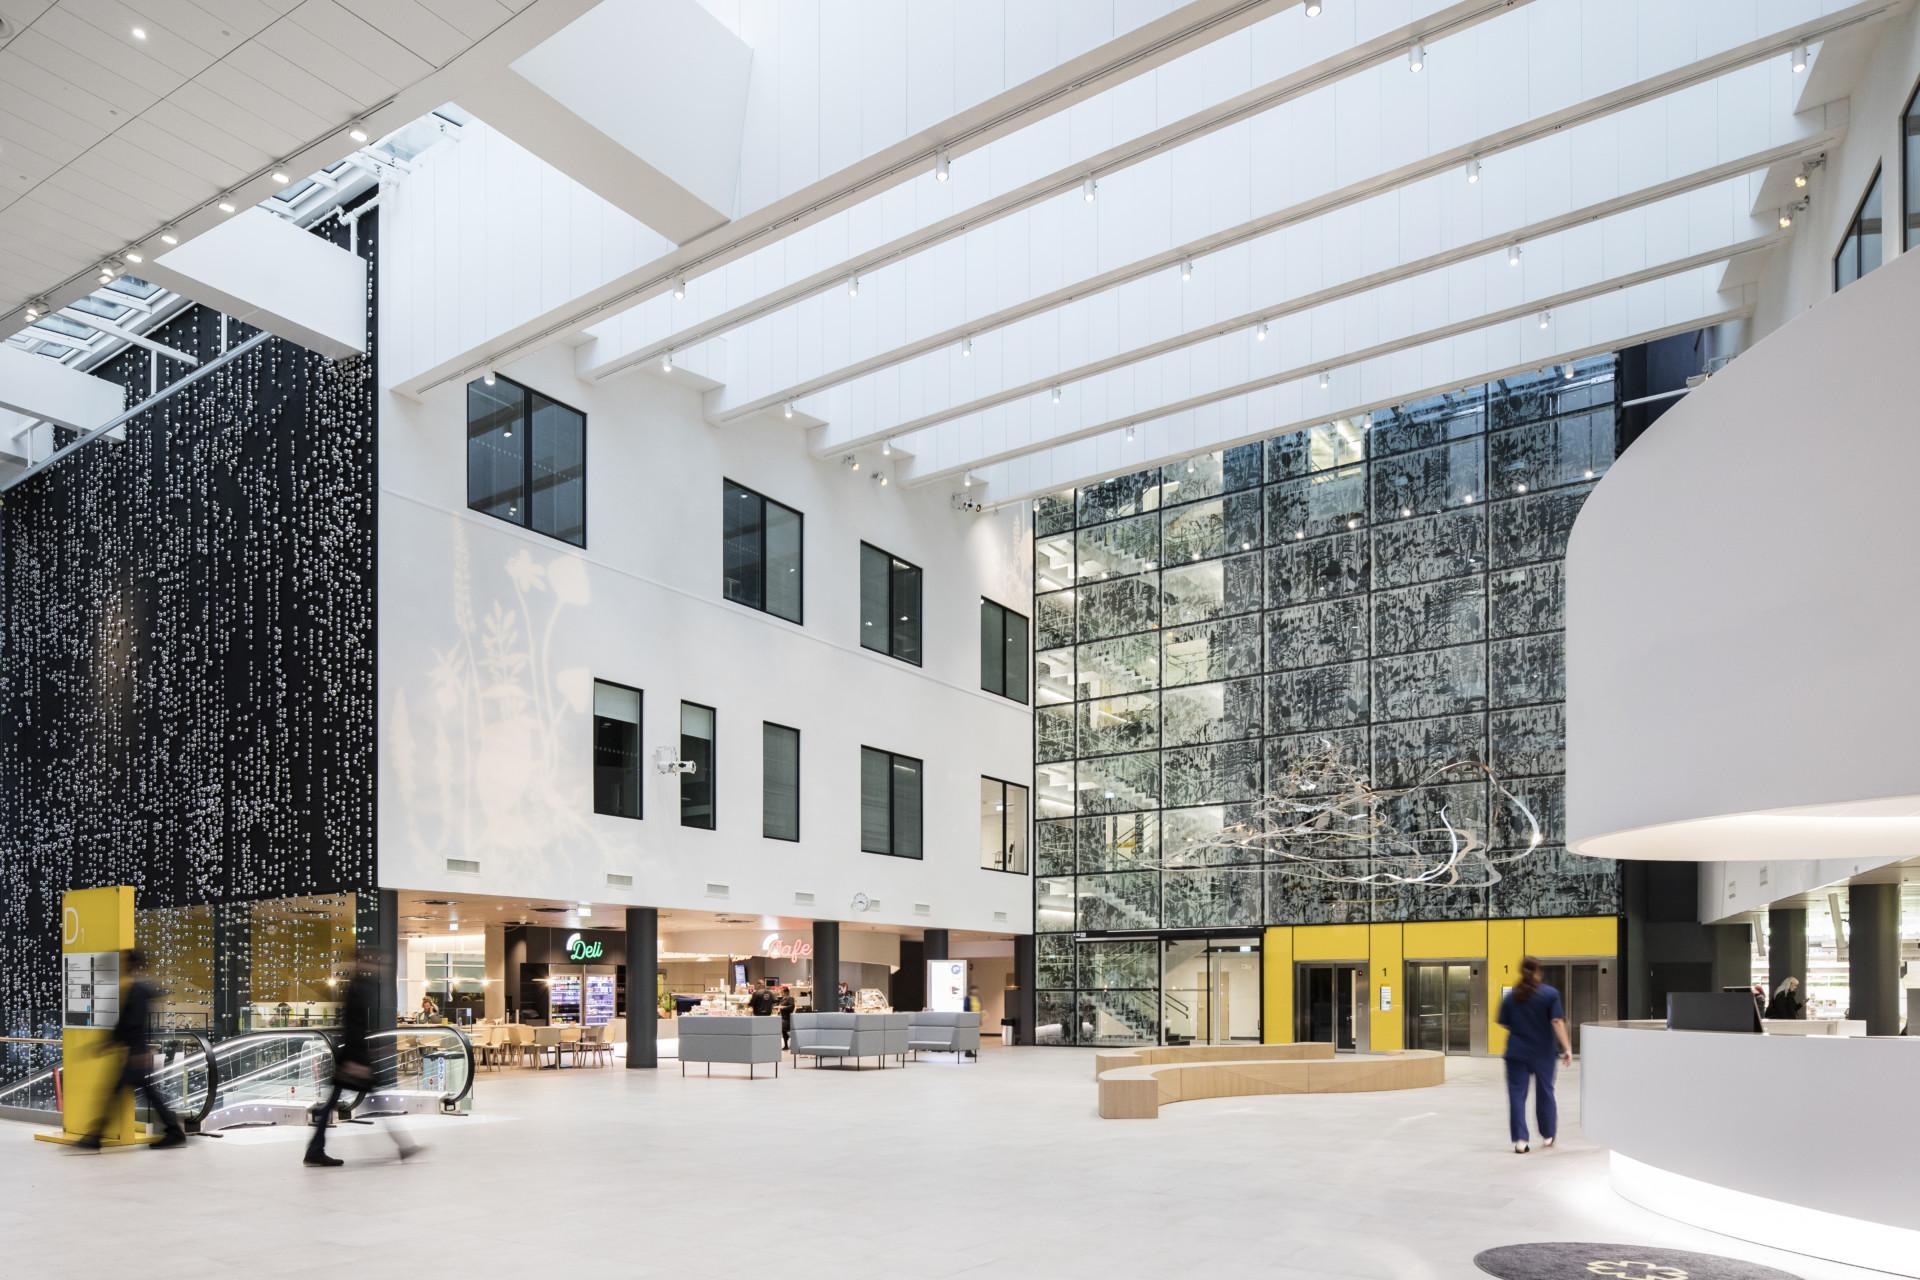 Tampereen Yliopistollisen Sairaalan päärakennuksen aulatilat, jotka on suunnitellut sisustusarkkitehtitoimisto Protest Design. © Kuvio Oy / Anders Portman